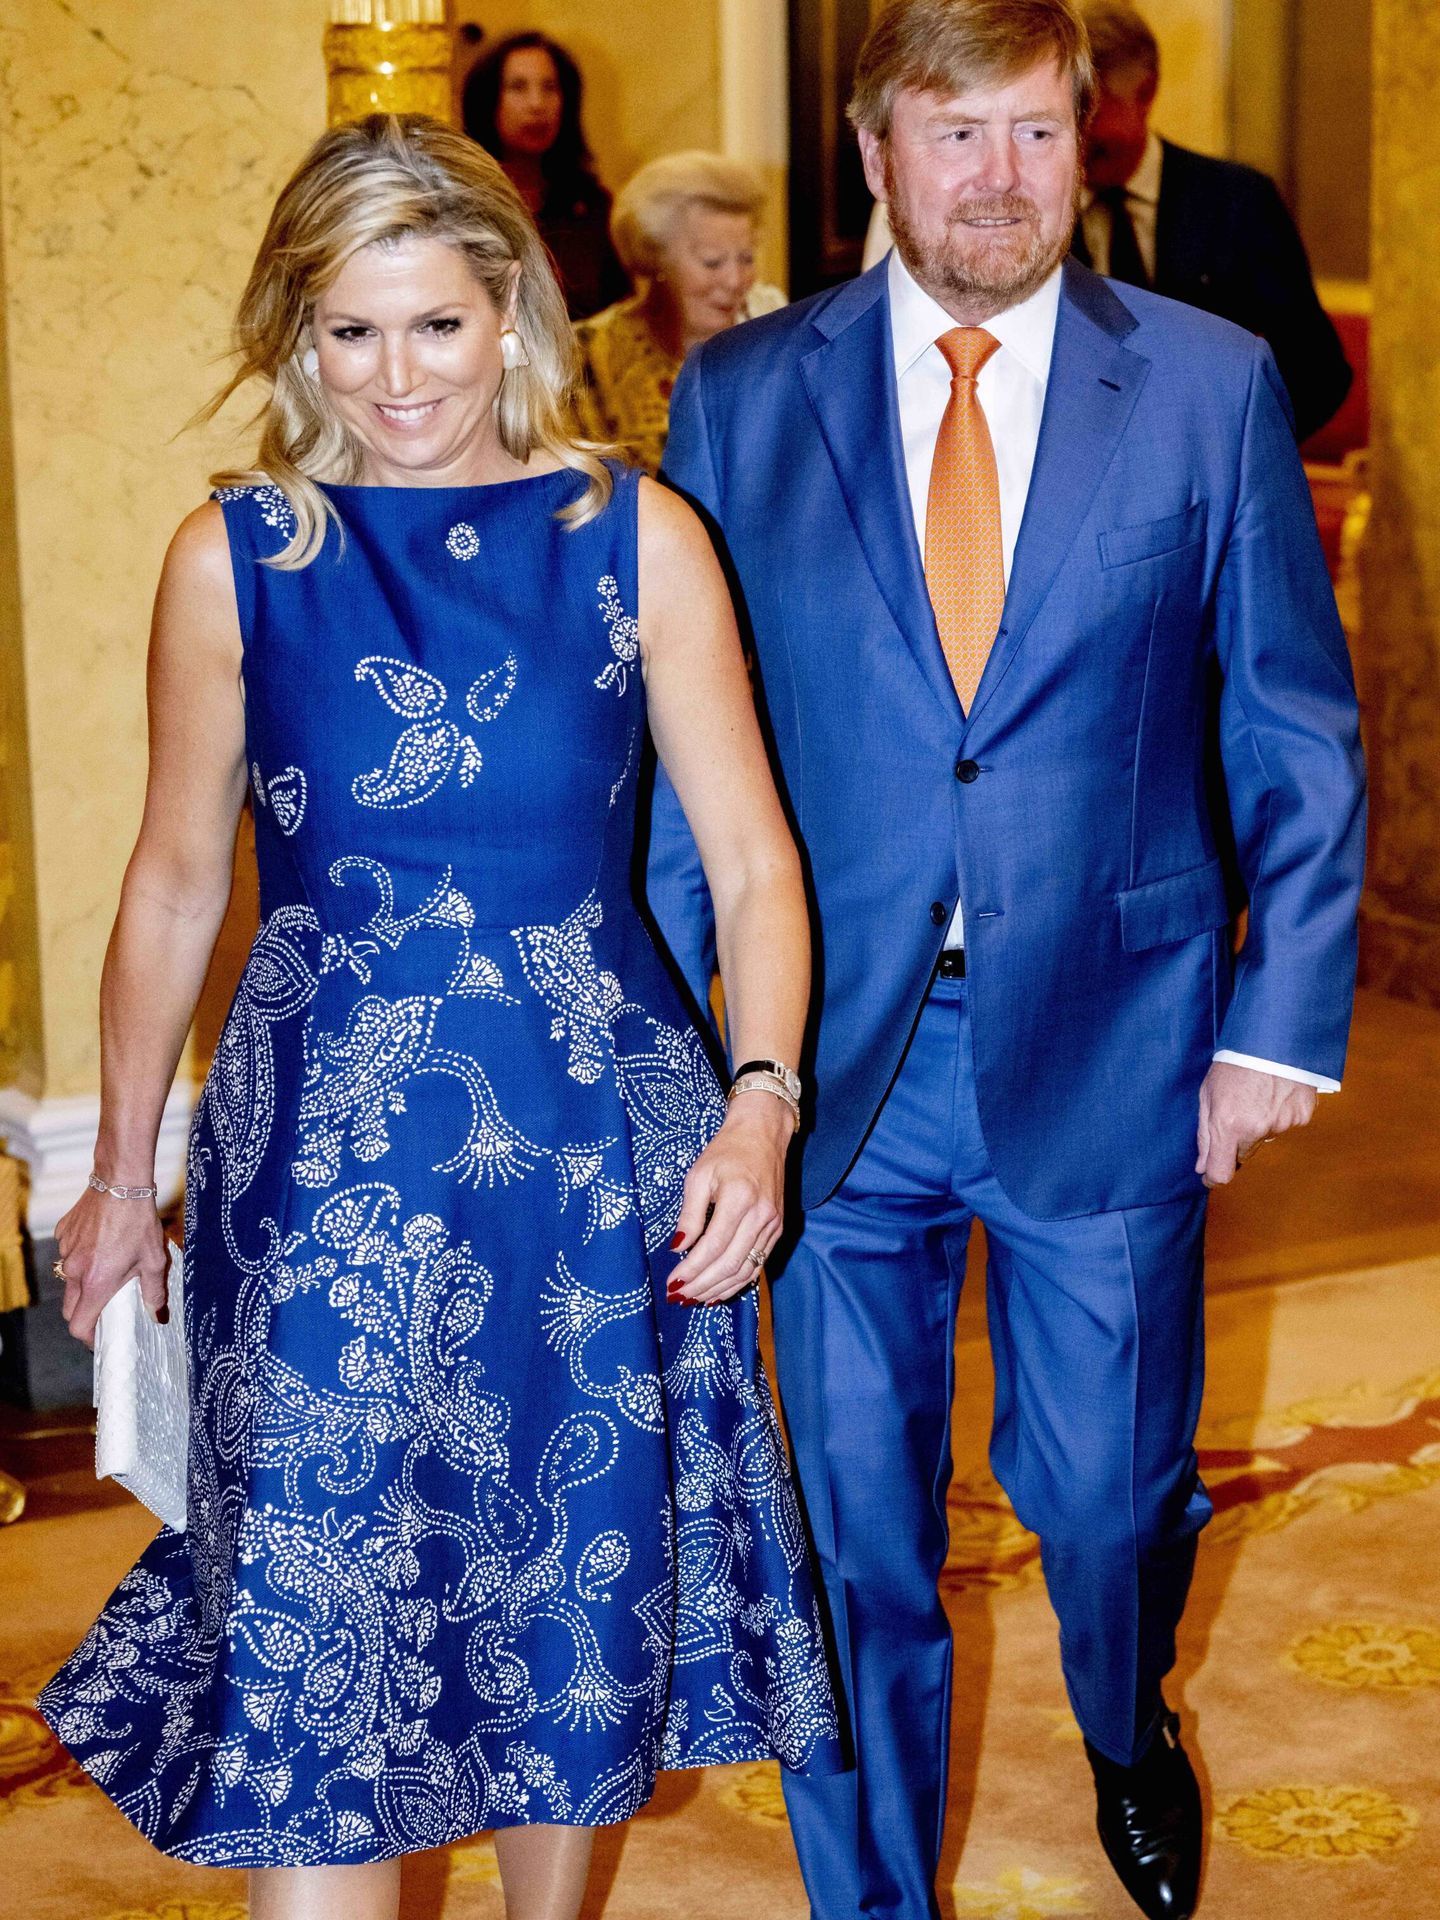 Máxima y Guillermo Alejandro, en conjunto con vestido y traje azul. (Cordon Press)